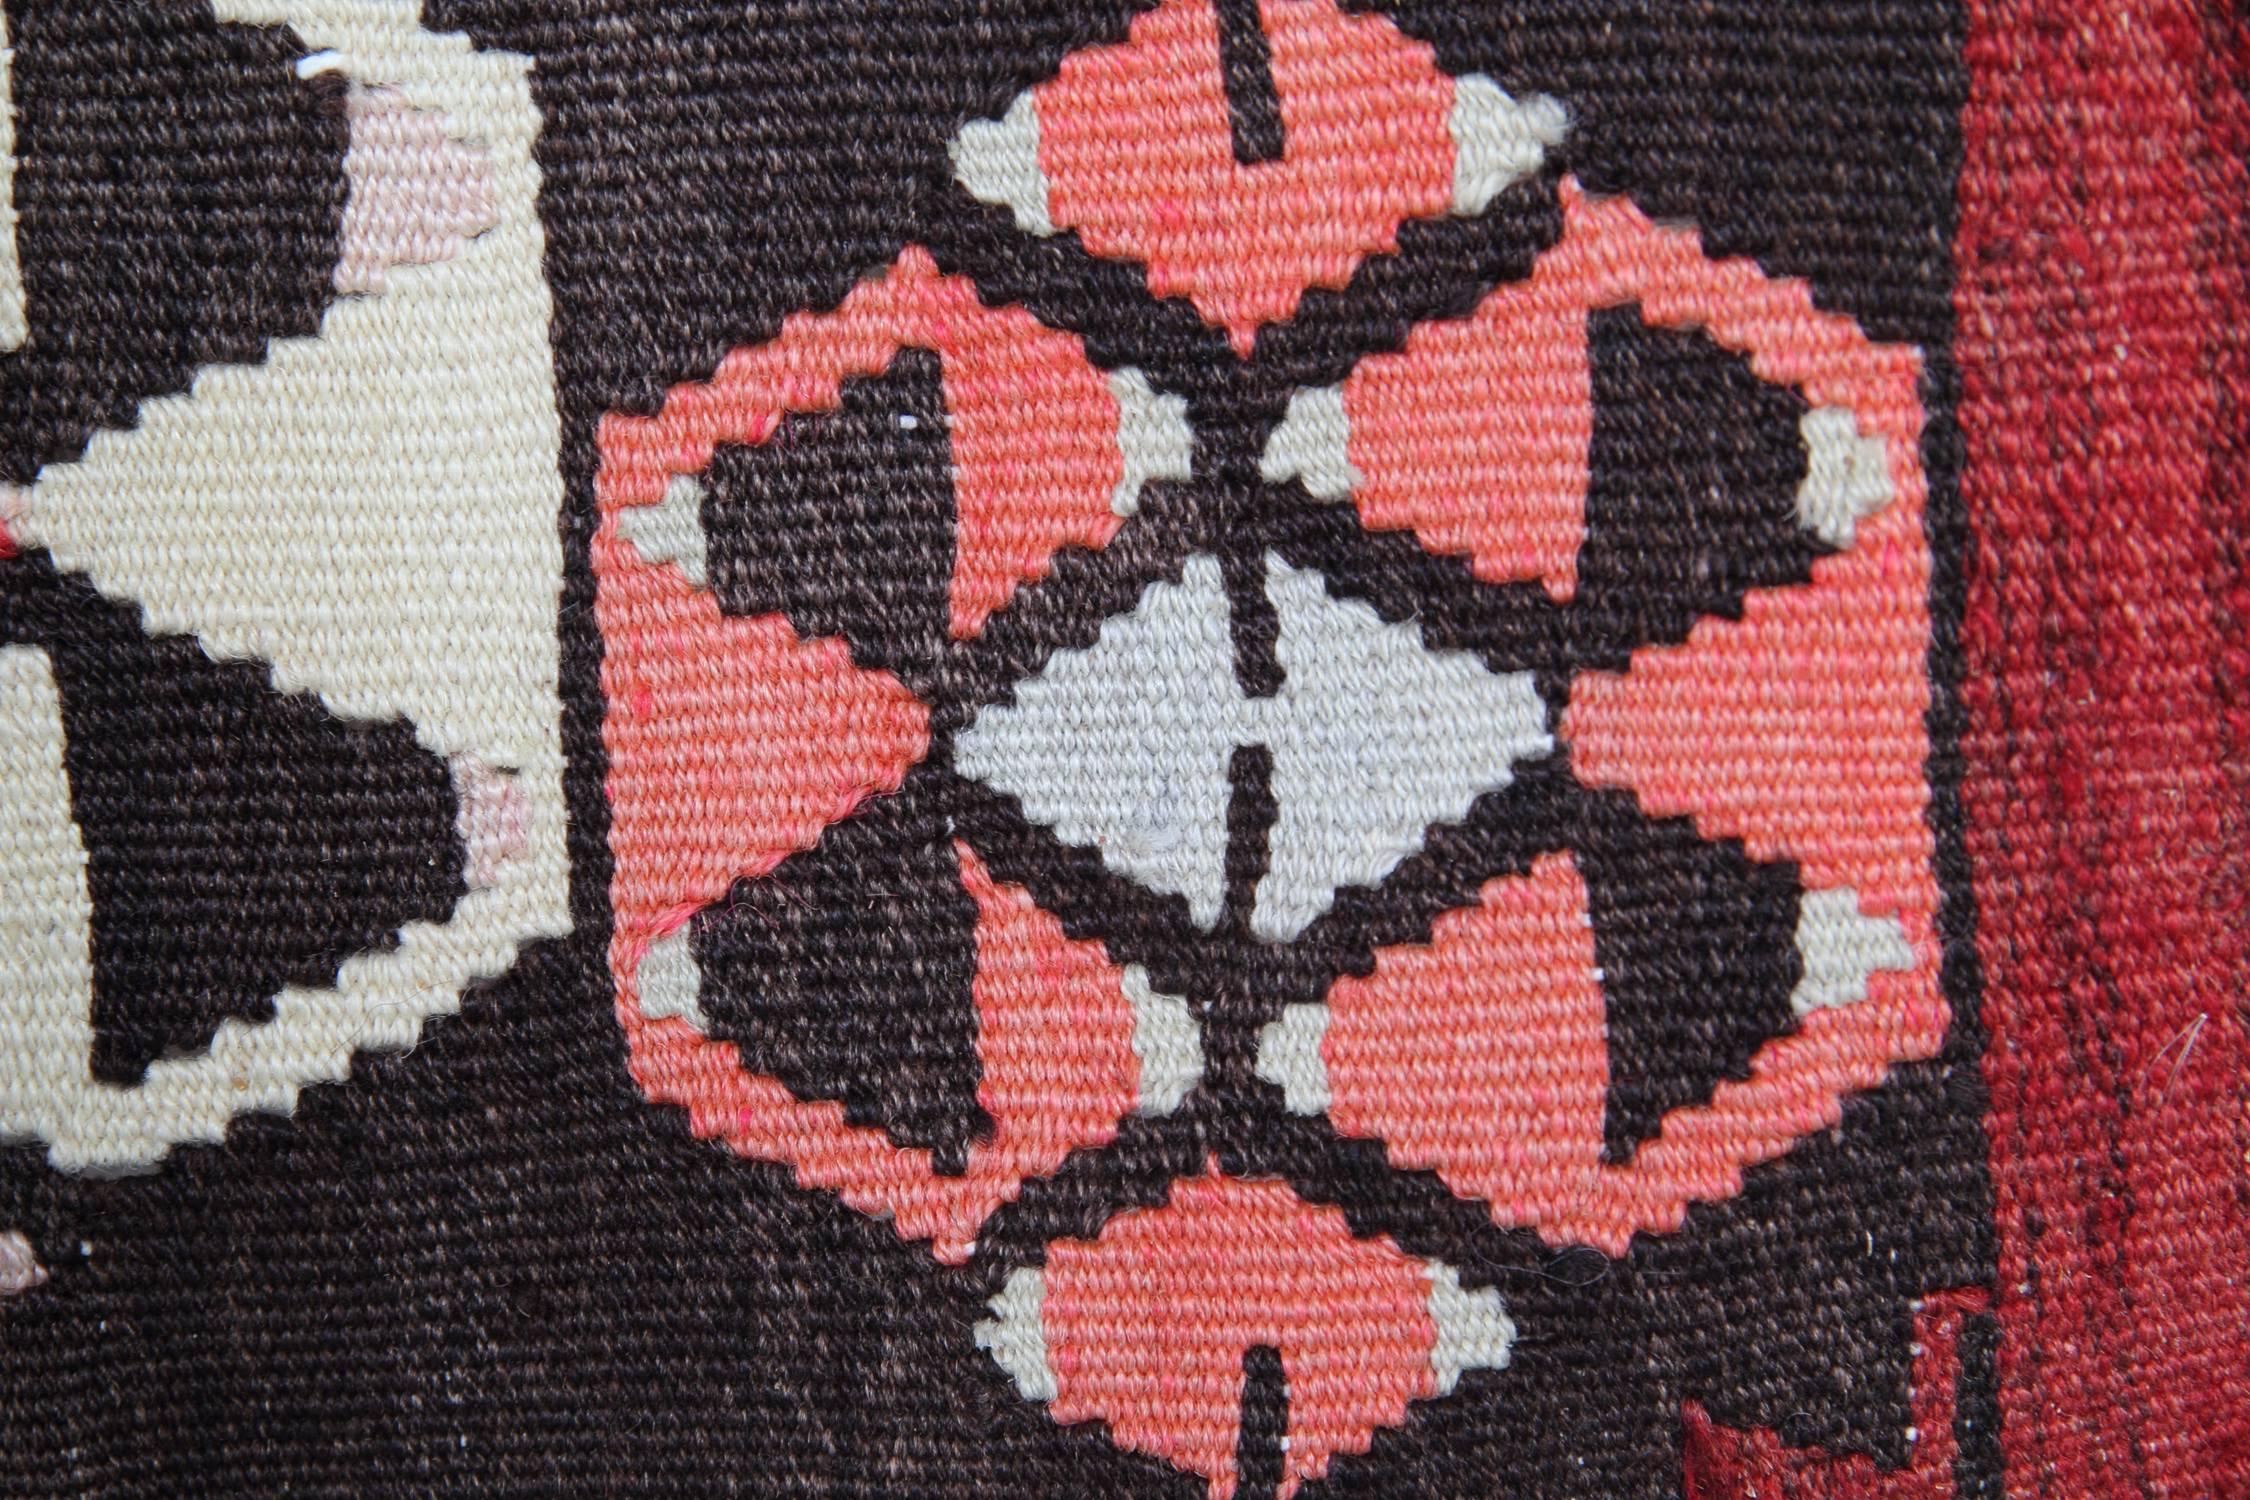 Ce tapis coloré fait à la main est un tapis turc tissé par des tisserands très qualifiés en Turquie, qui ont utilisé de la laine et du coton de la plus haute qualité. Le tapis à tissage plat présente des couleurs rouge clair, orange, gris-vert,